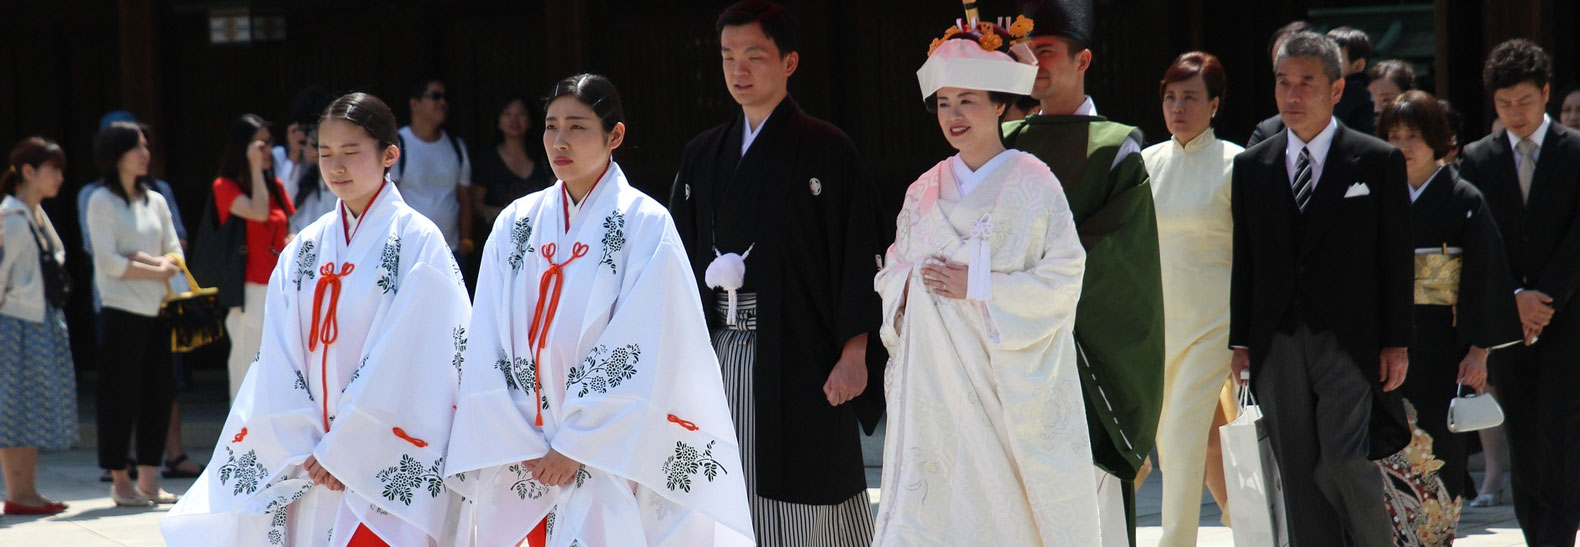 Cosa indossare per un matrimonio giapponese: consigli e suggerimenti